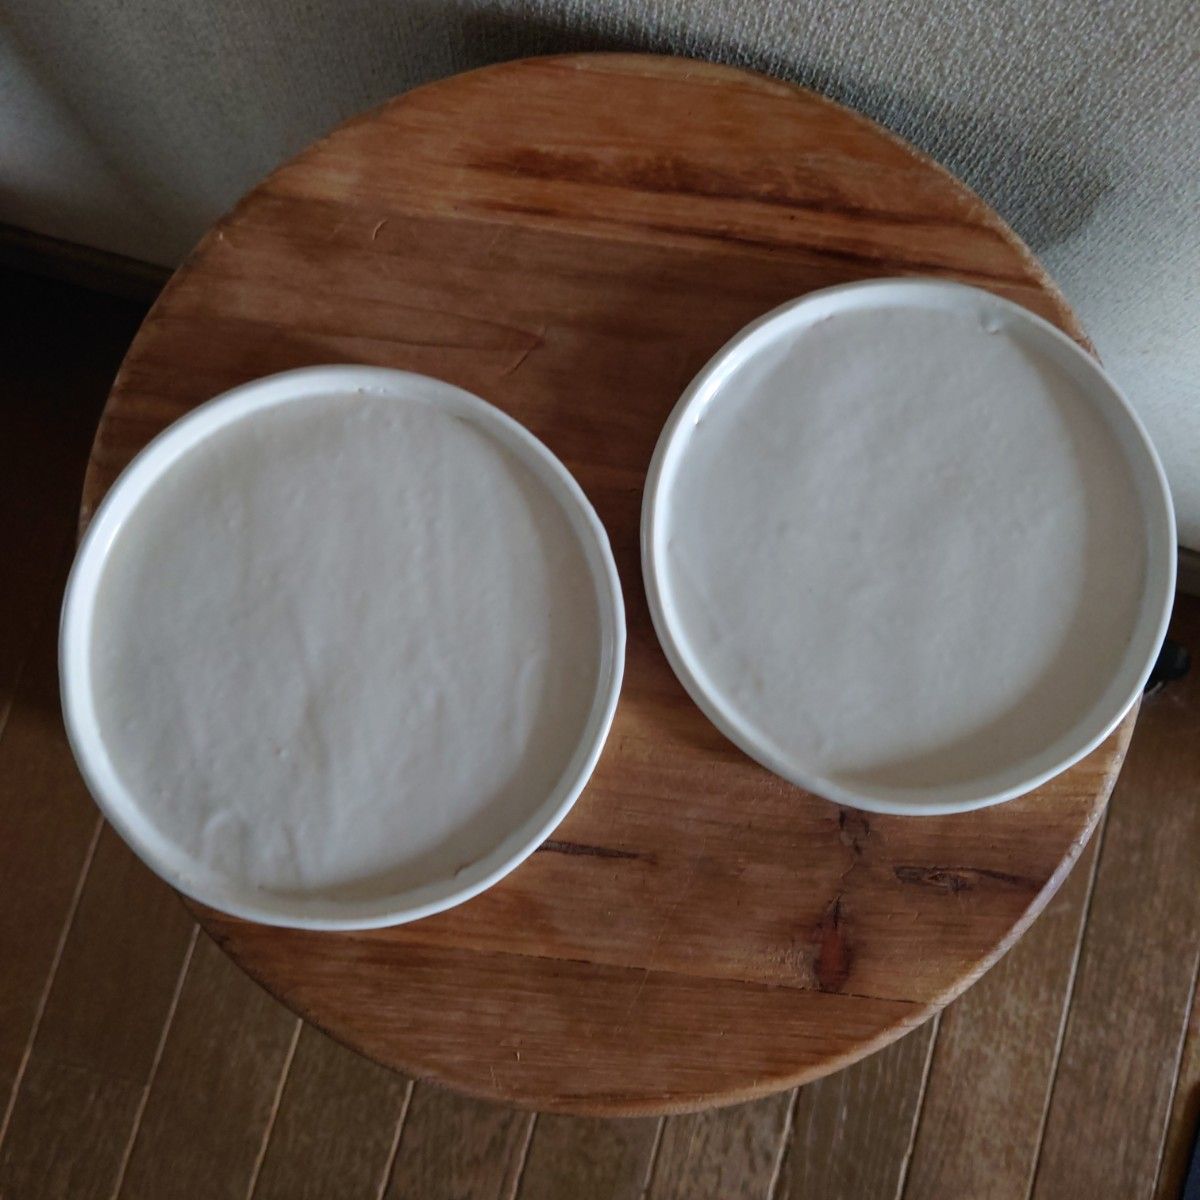 25 陶芸作家 皿 器 食器 平皿 2個セット